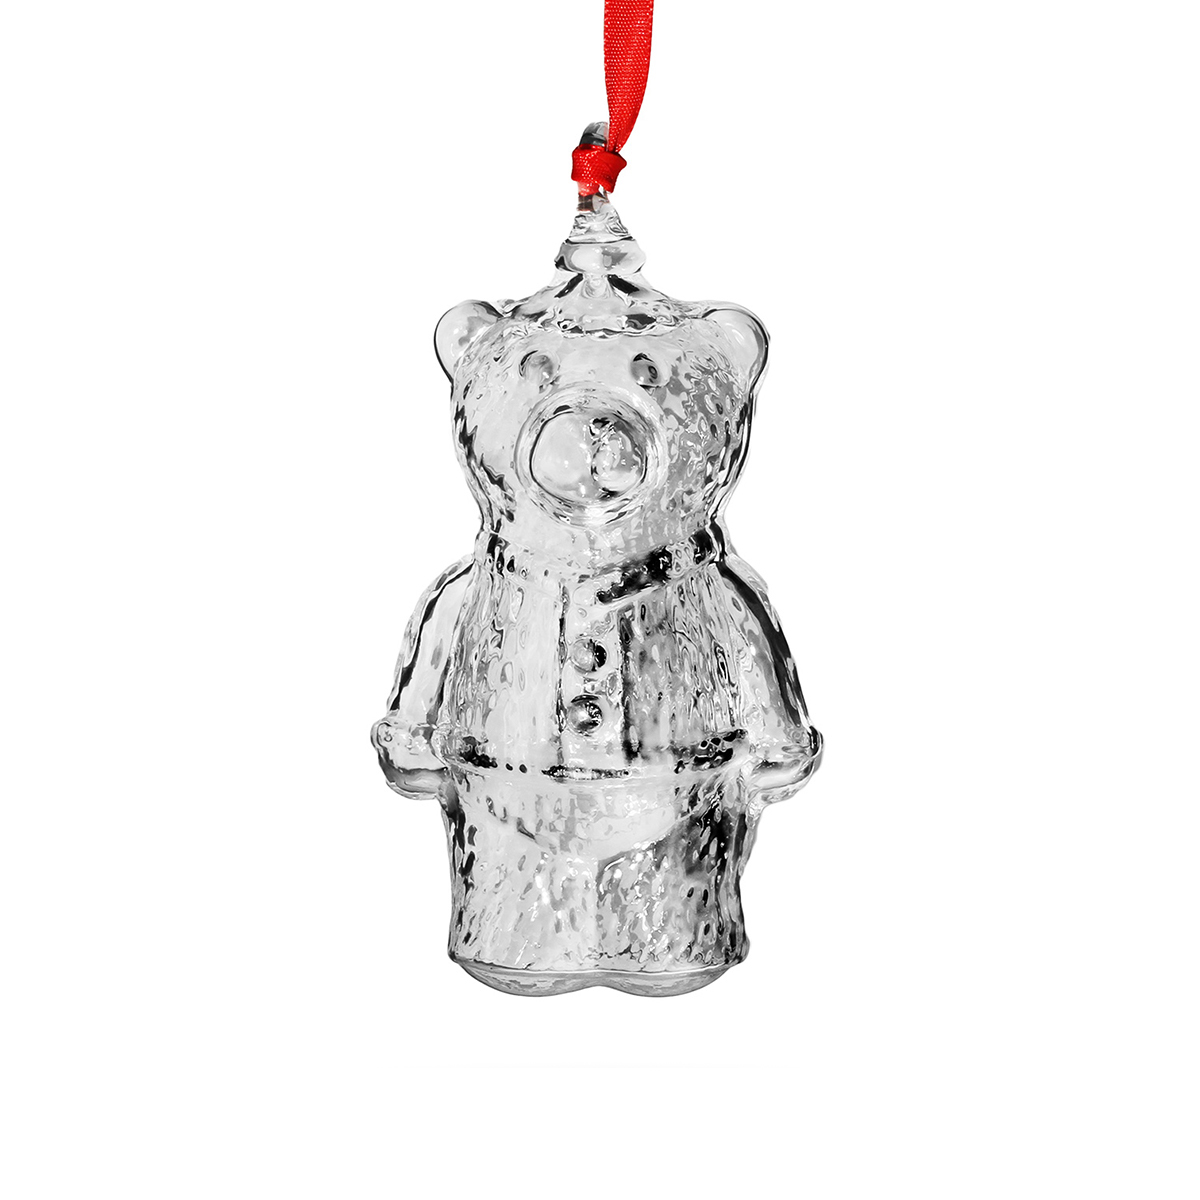 Steuben Teddy Bear Ornament